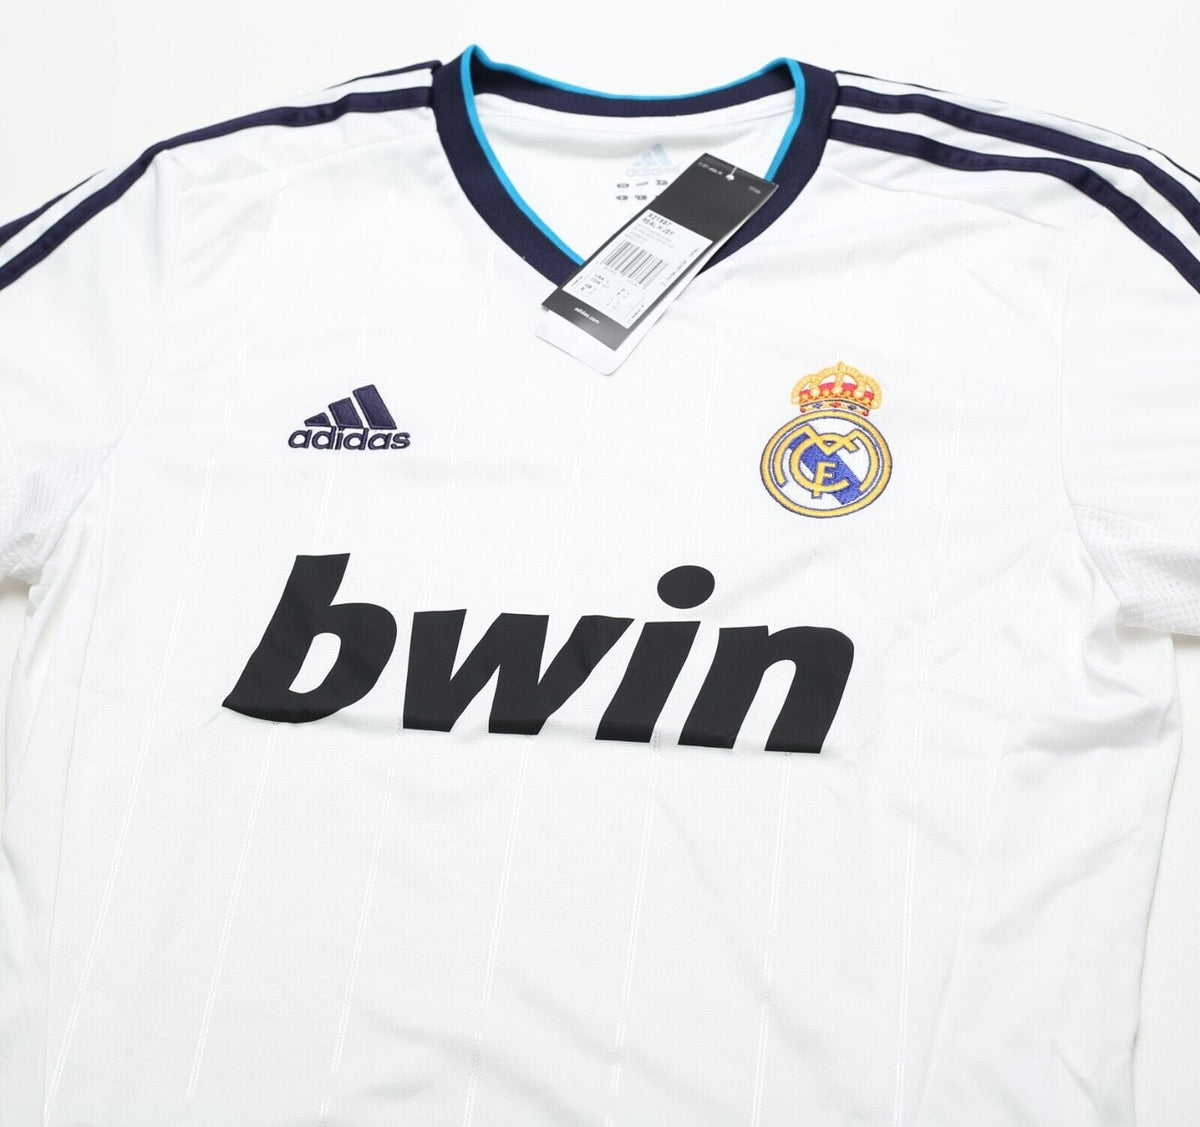 Real Madrid - Vintage Football Shop